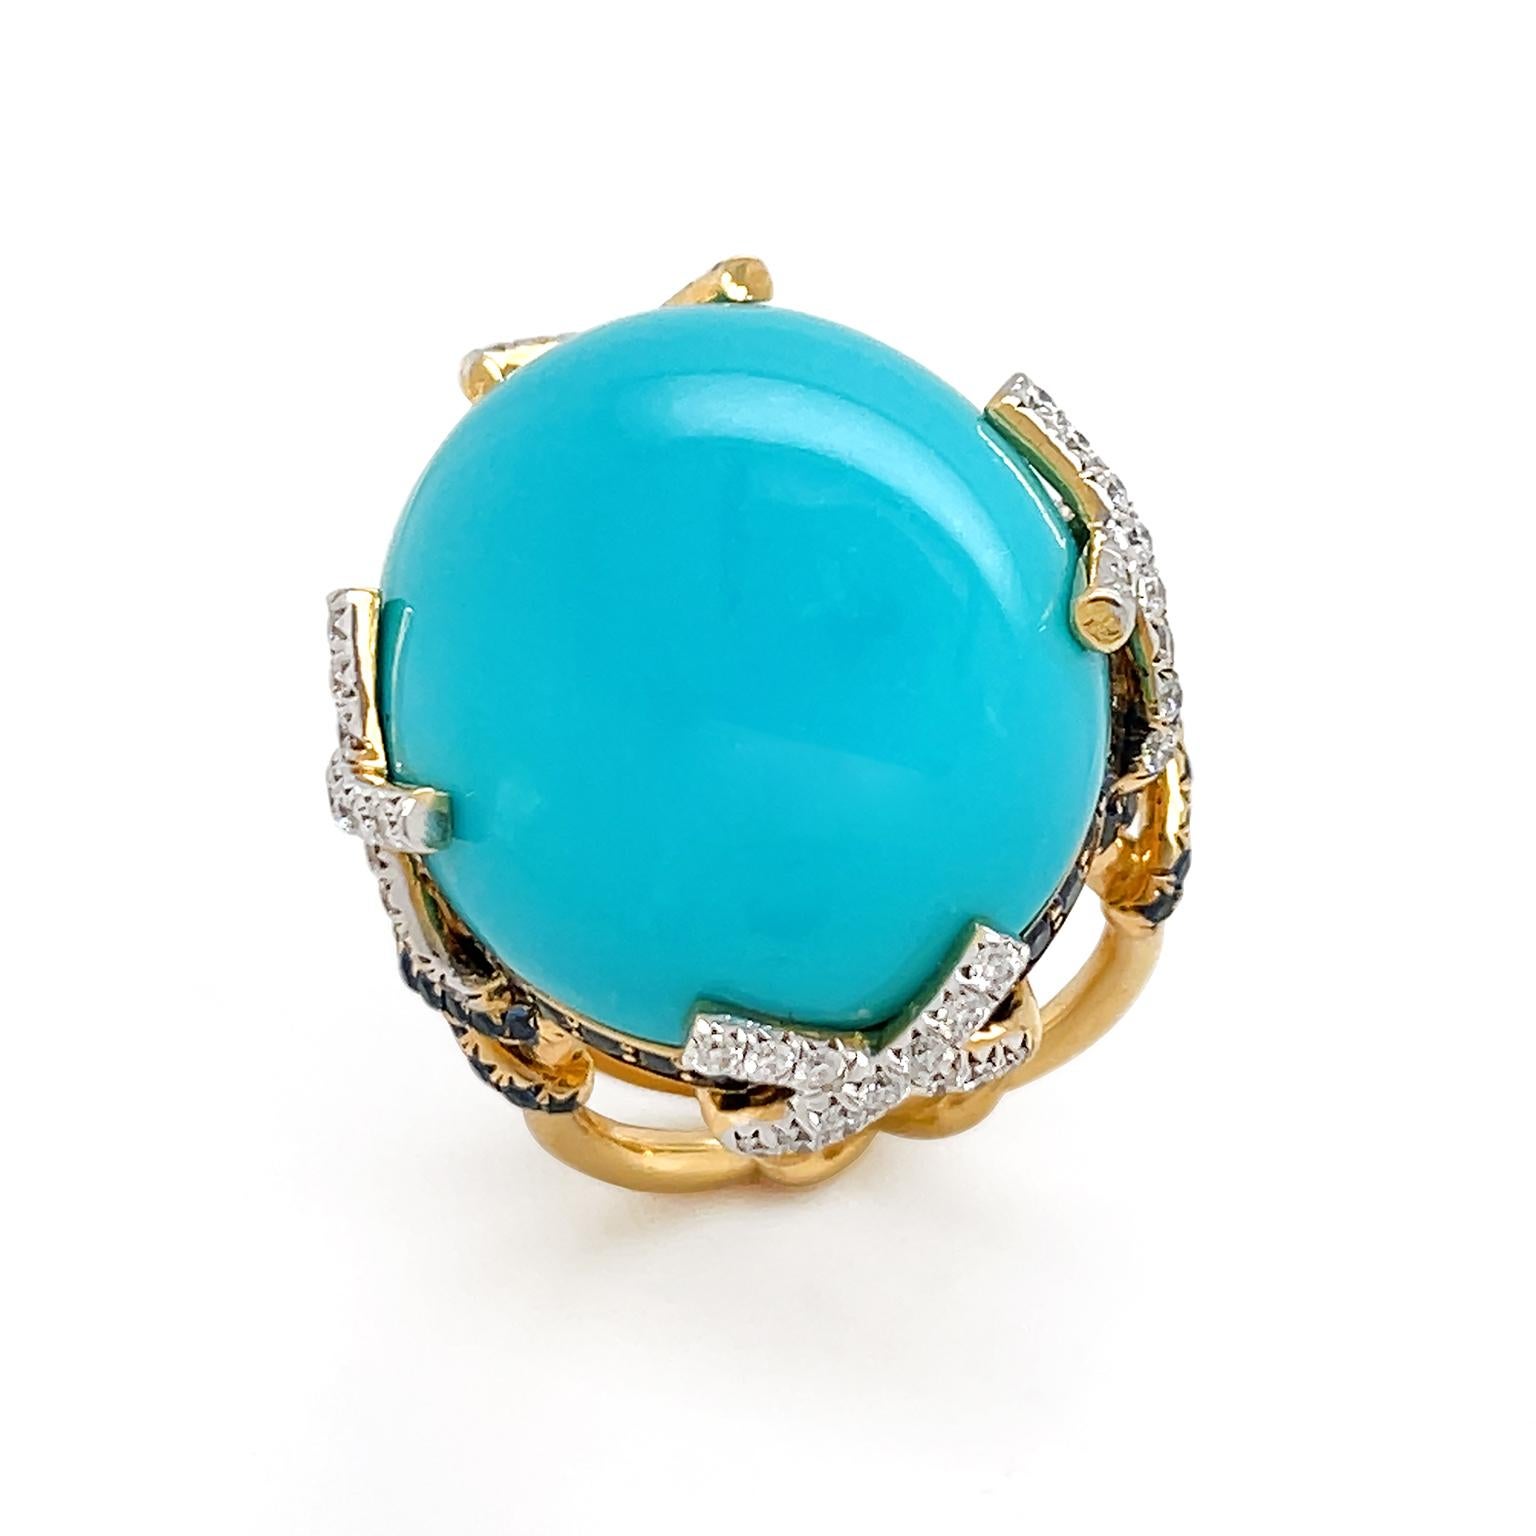 La pulida belleza azul verdosa de la turquesa se realza con piedras preciosas de diamantes y zafiros para este anillo. Una turquesa cabujón ovalada es el vértice, sostenido por hilos entrecruzados de oro amarillo de 18 quilates con diamantes talla